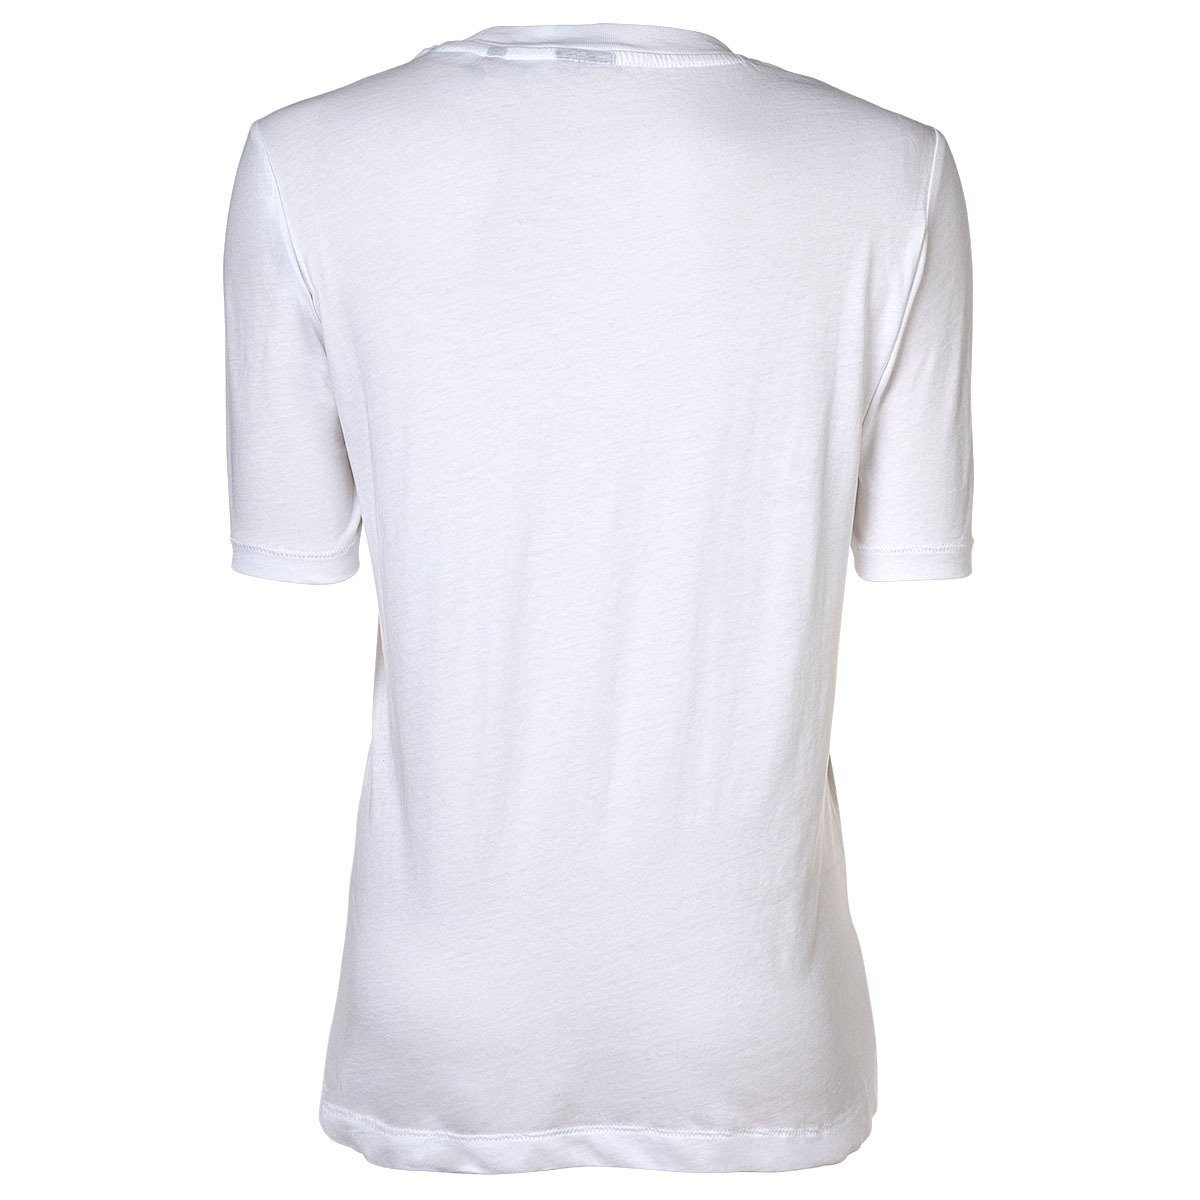 Originals T-Shirt Weiß - RAW G-Star Damen Fit Label T-Shirt Regular